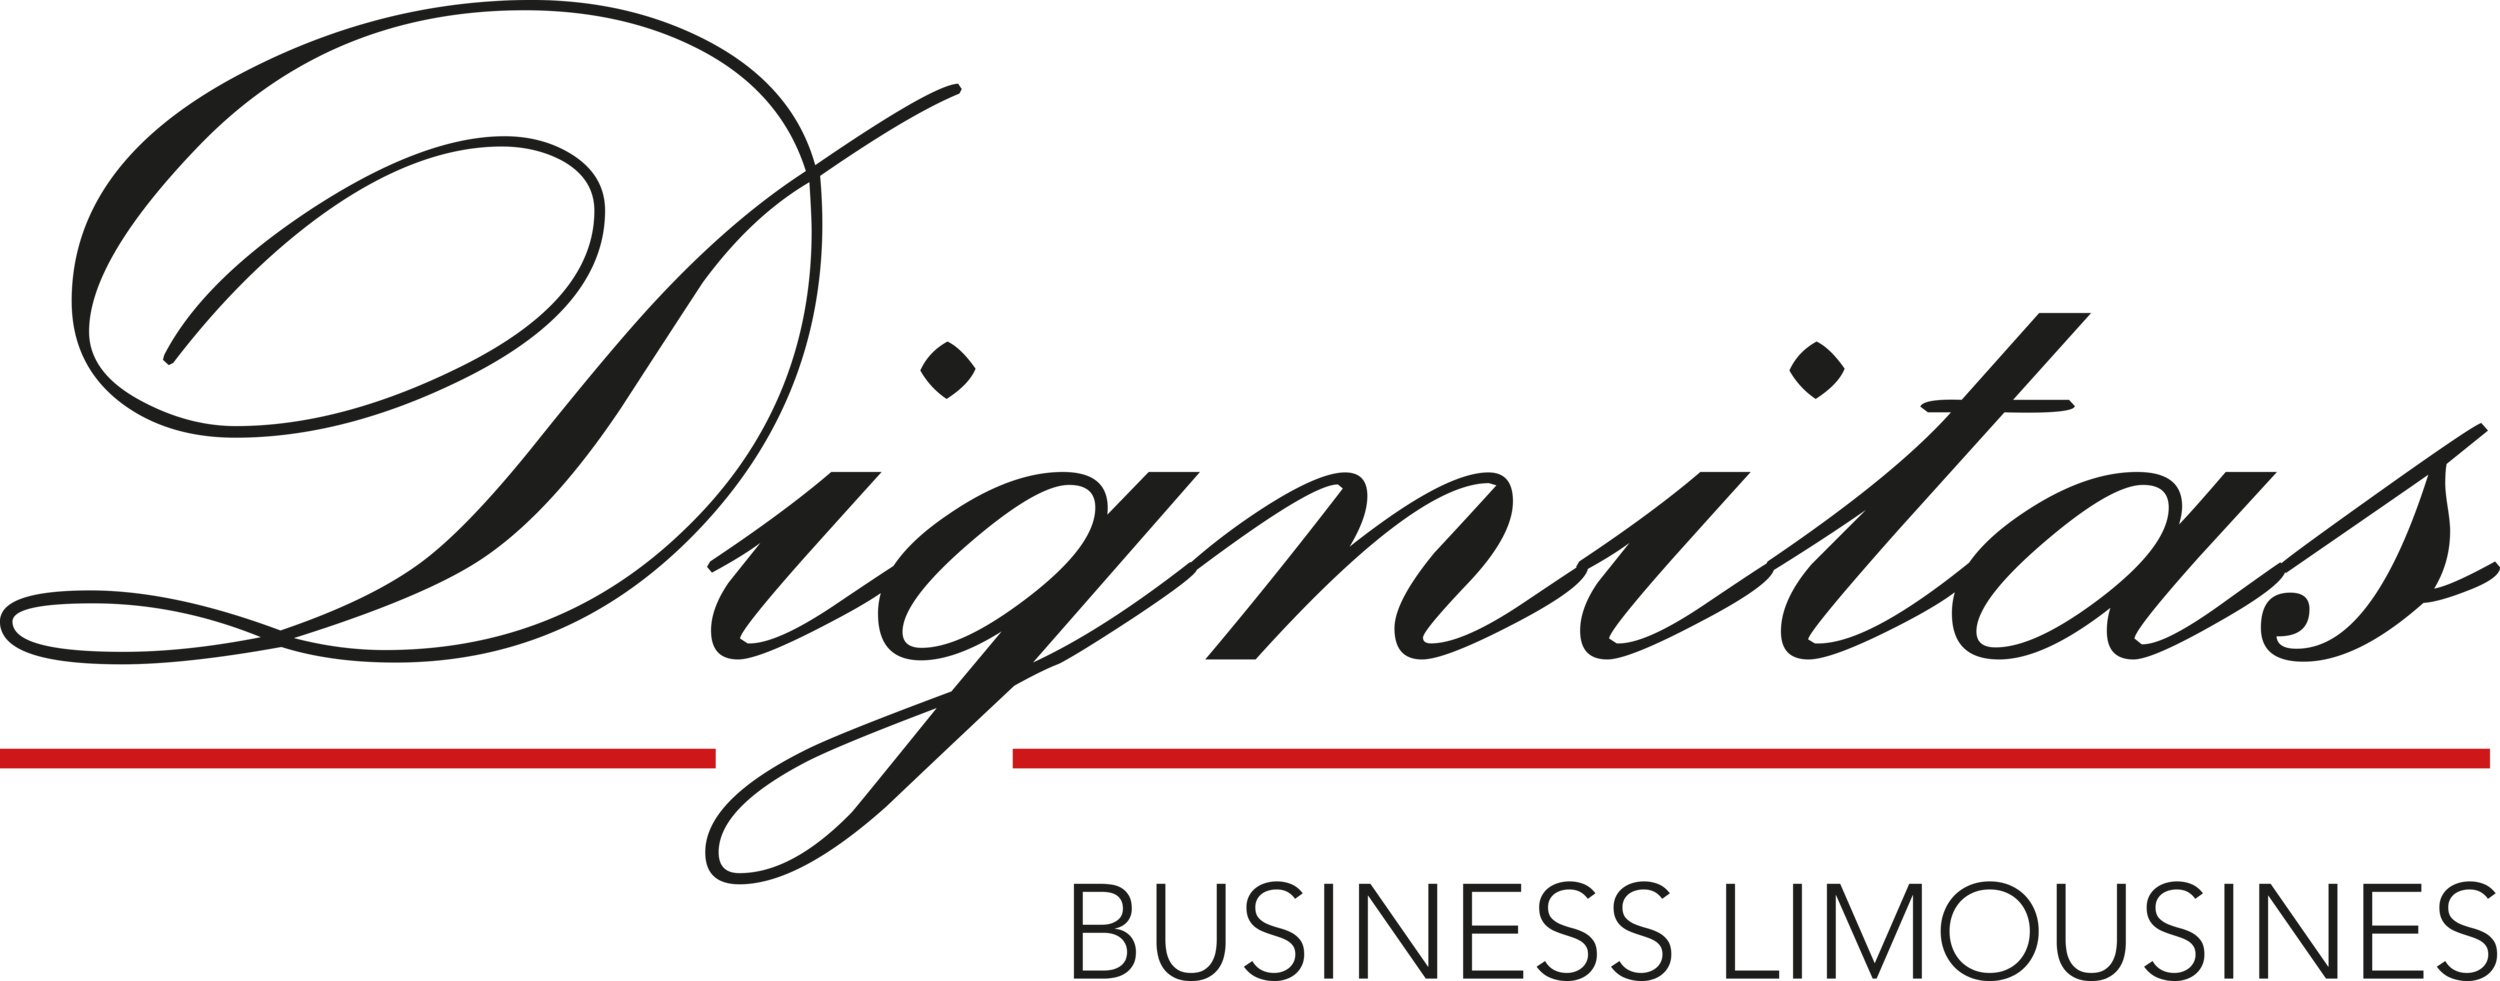 Dignitas-logo-1.png